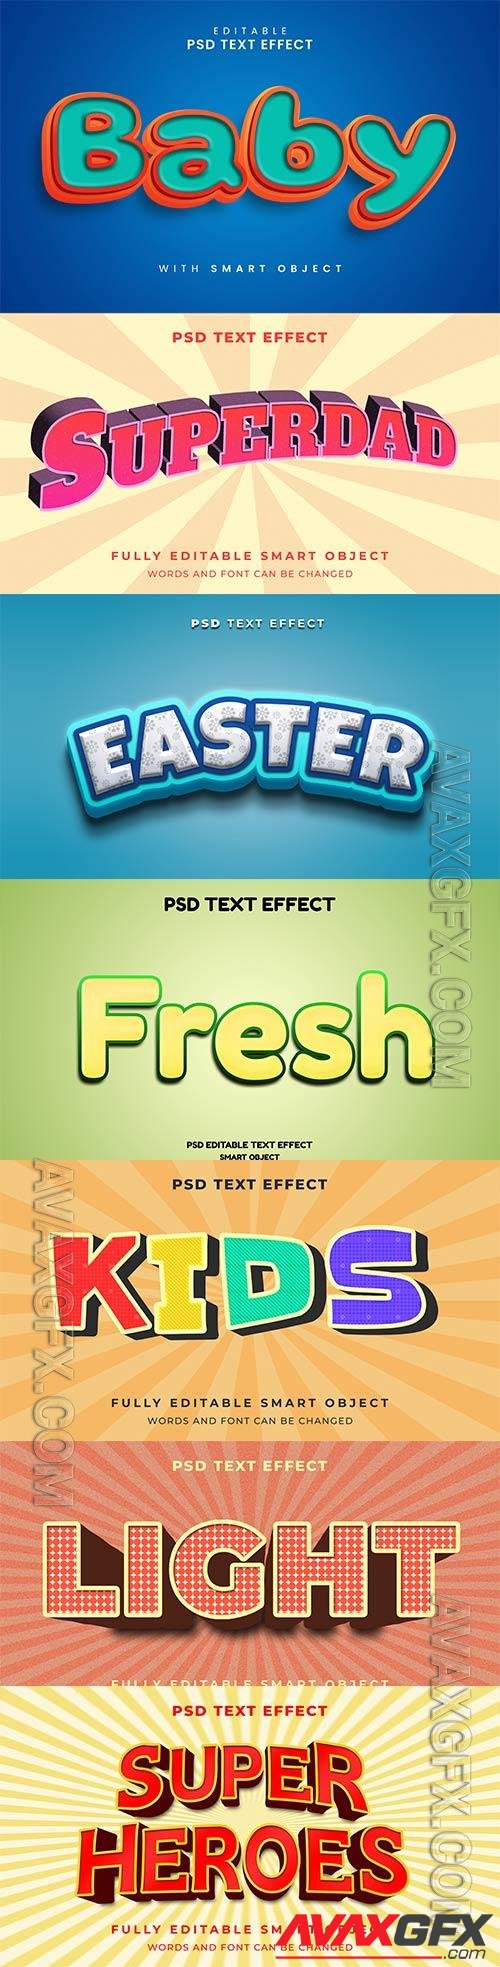 Psd text effect set vol 191